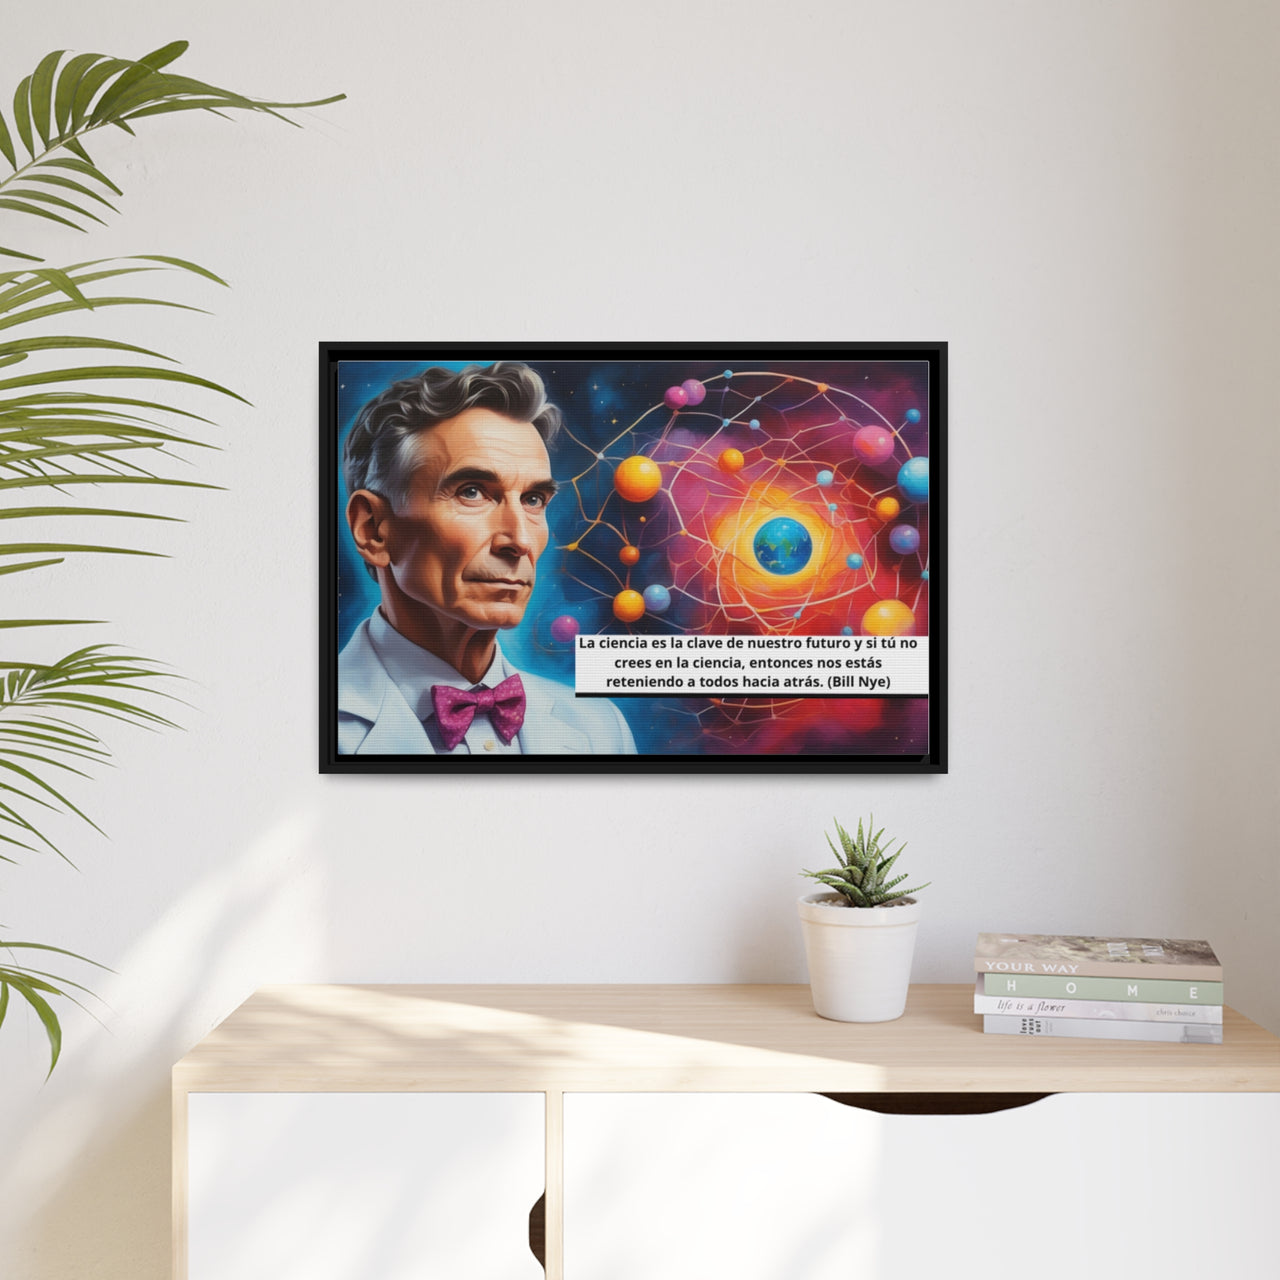 Cuadro de Bill Nye, Cuadro con frase inspiracional, Cuadro sobre ciencia